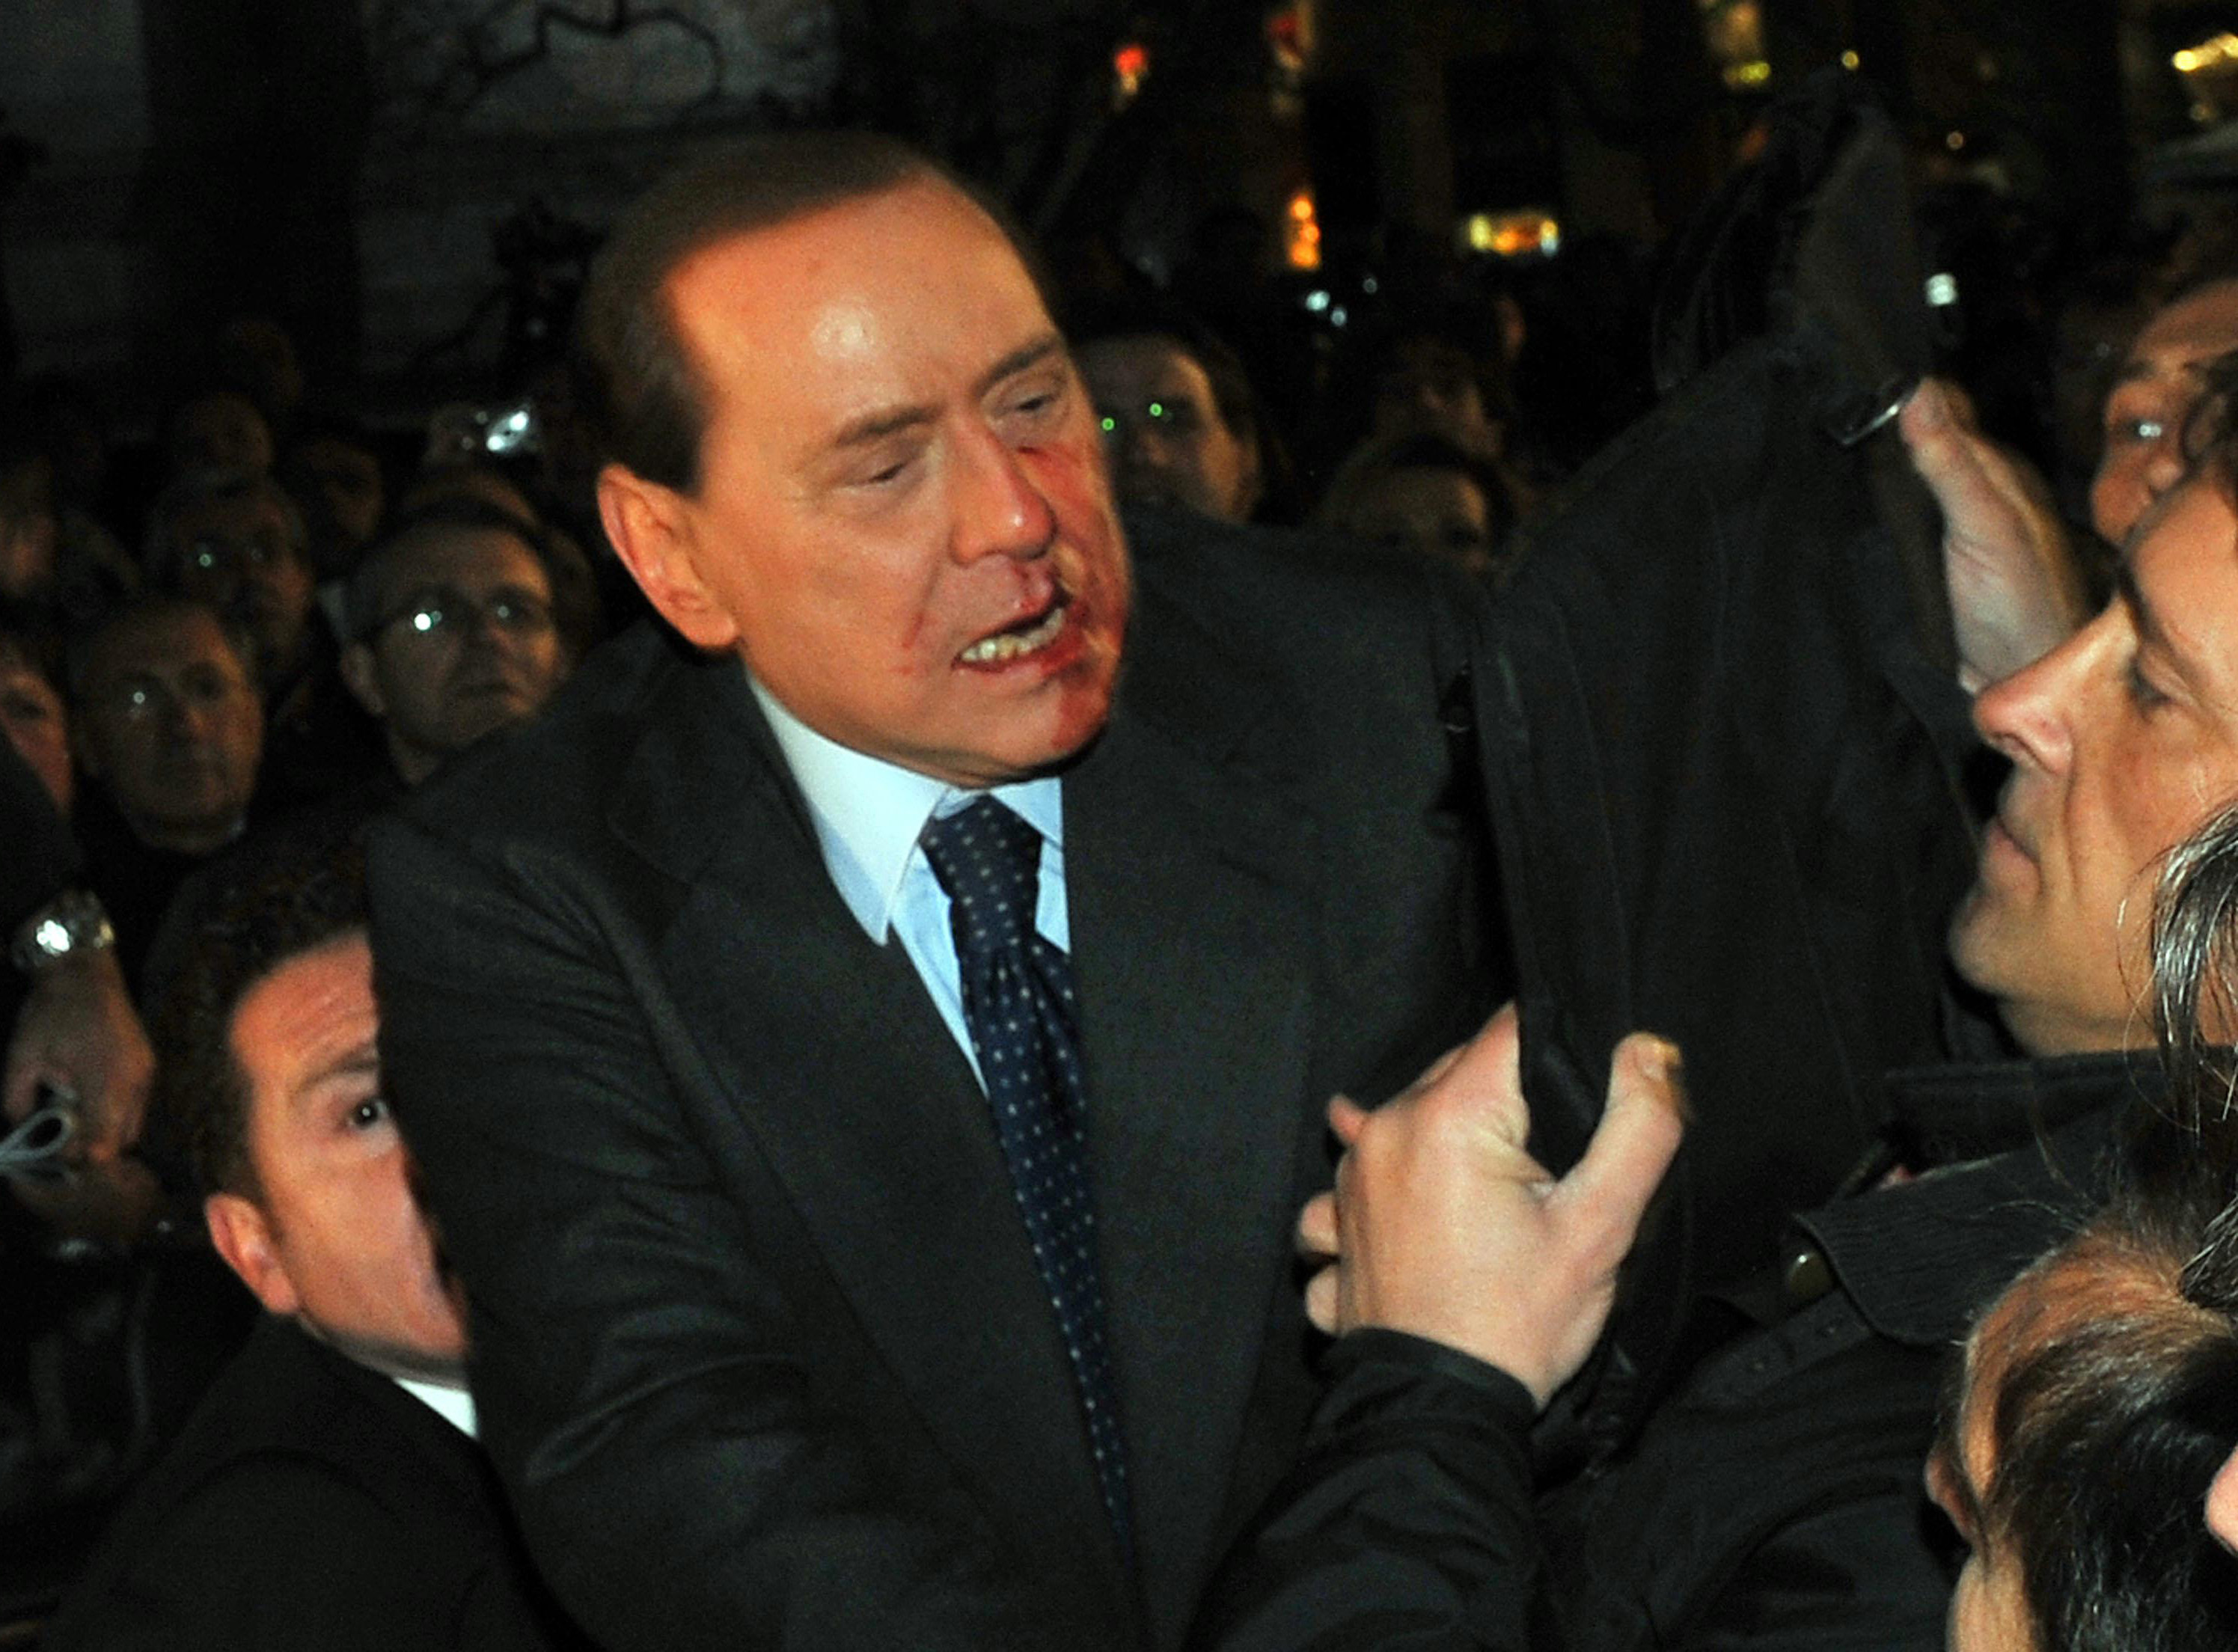 Milano, Massimo Tartaglia, Berlusconi, Attack, Italien, Silvio Berlusconi